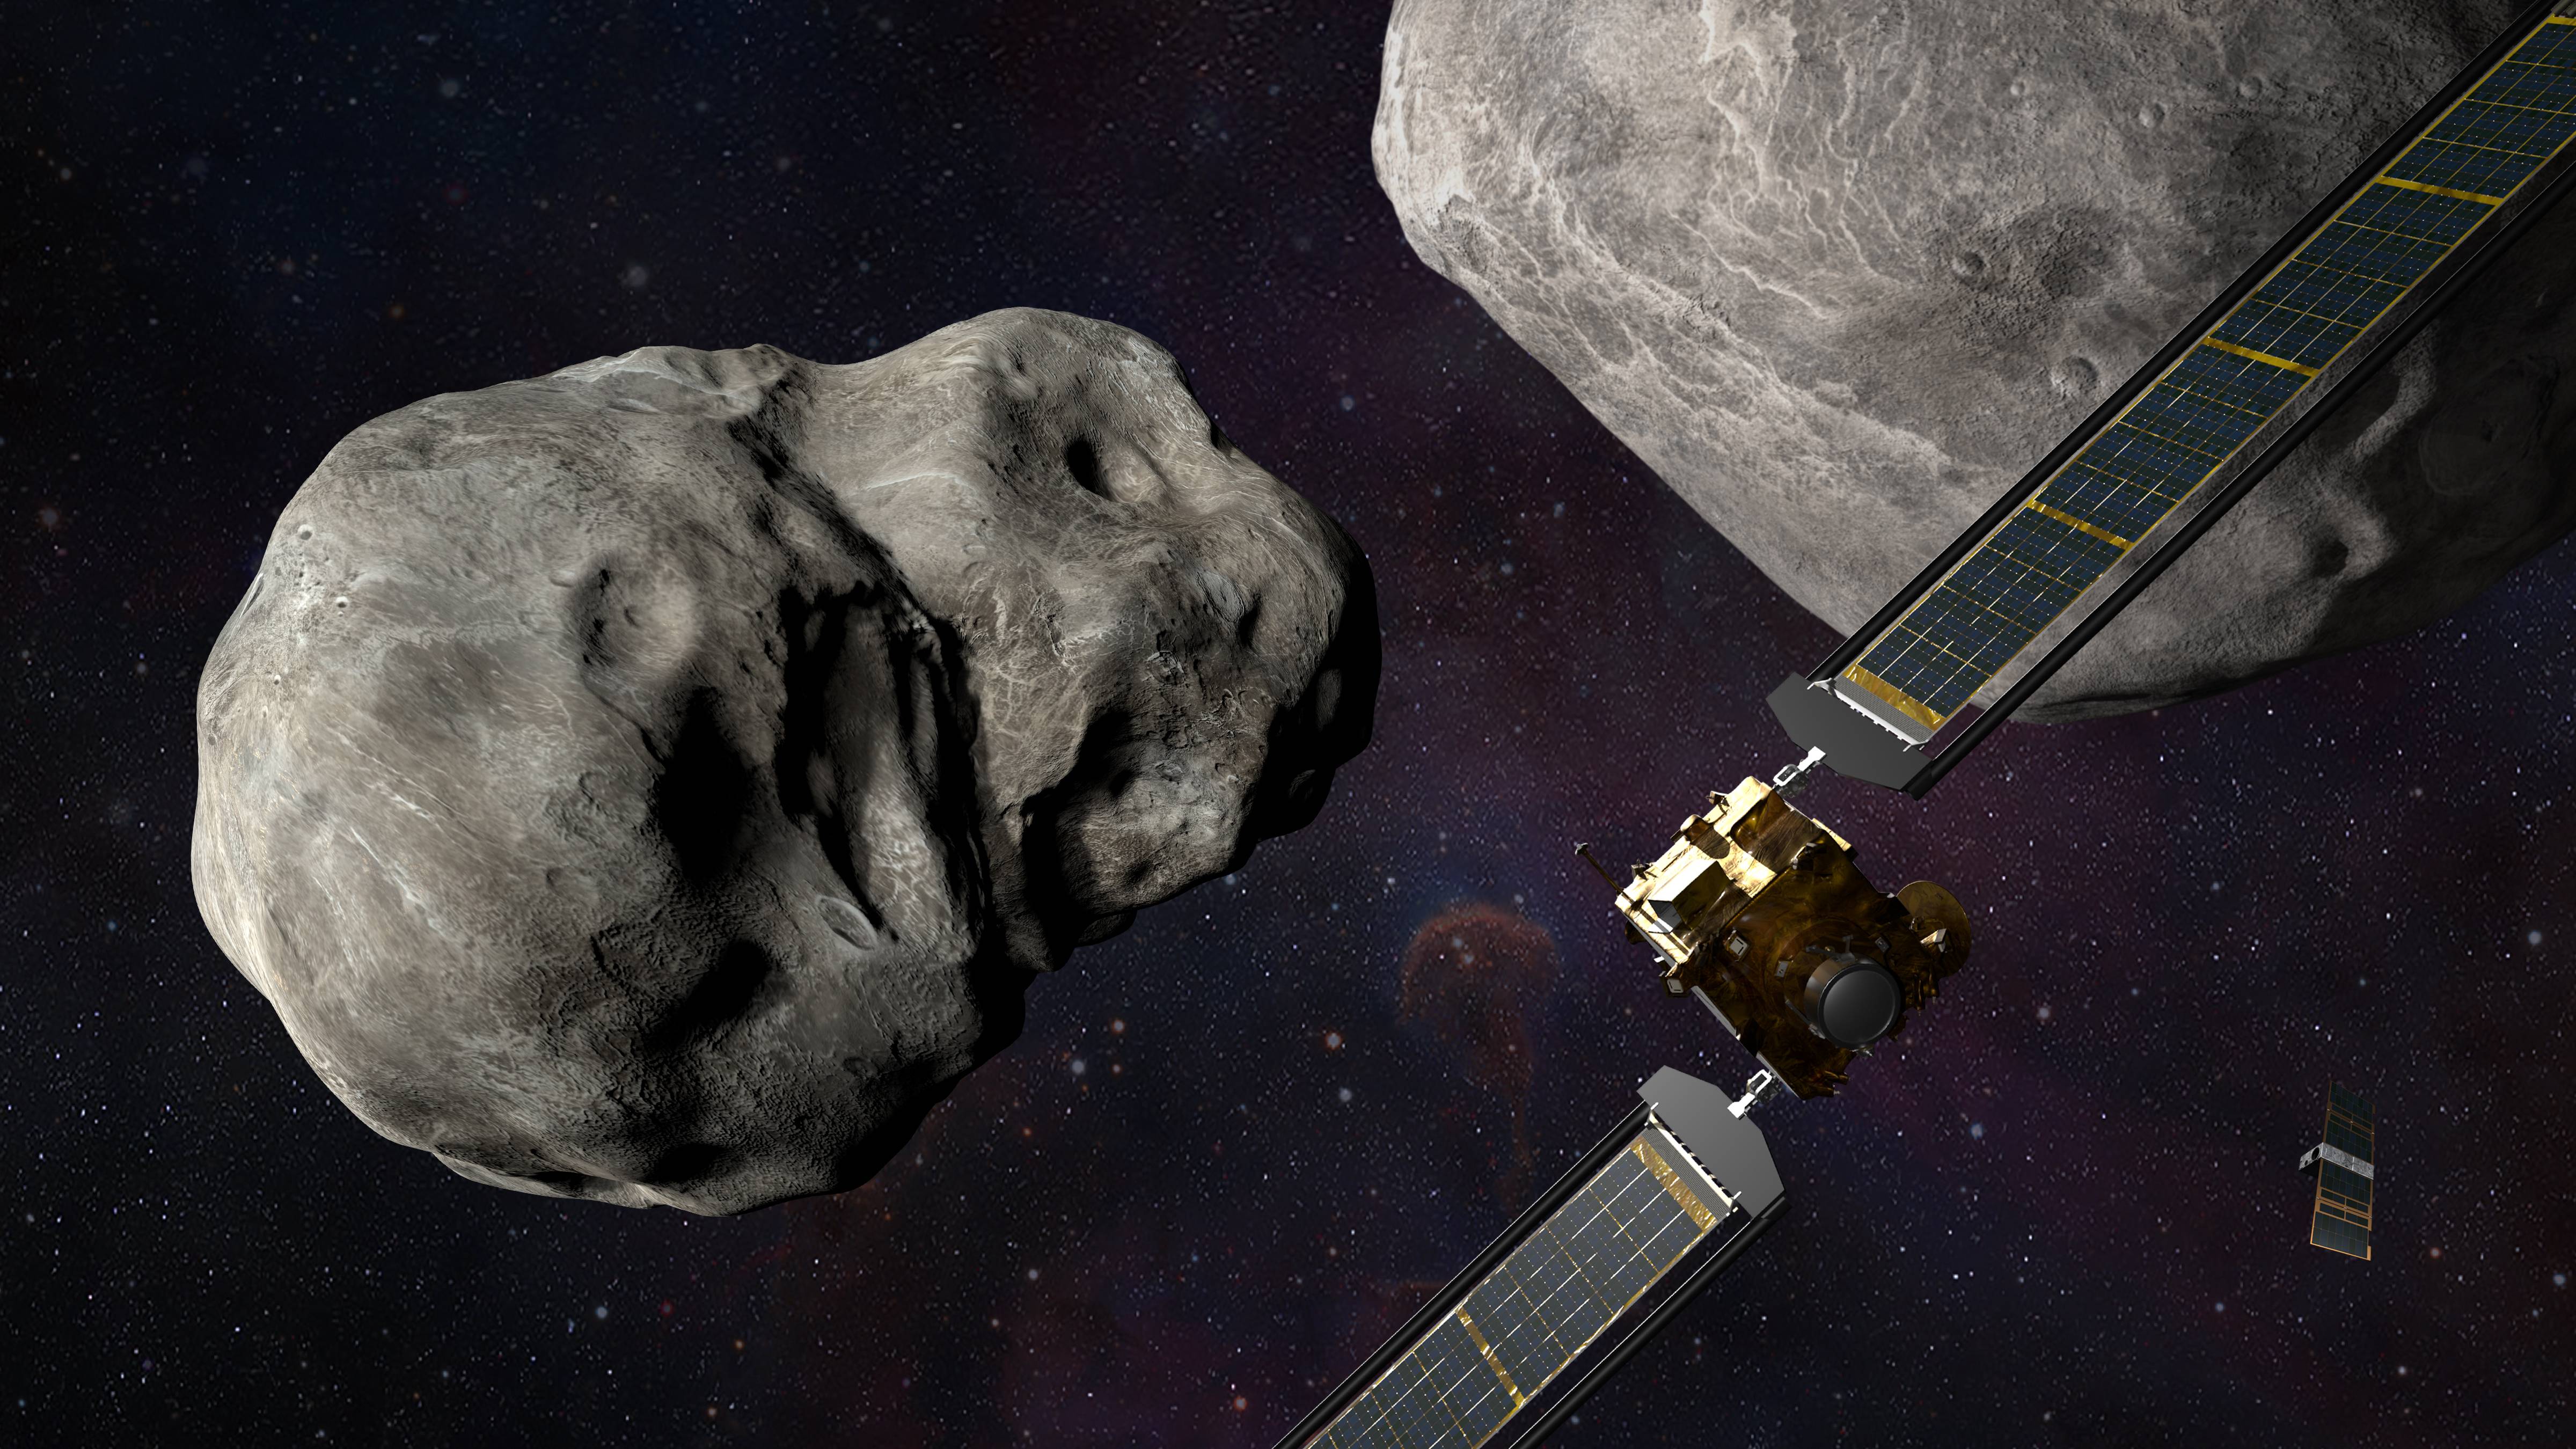 Dart header 1 - Proprio ora, l’umanità ha completato la prima missione di difesa planetaria in assoluto! “Walking on the Moon” si sta avverando